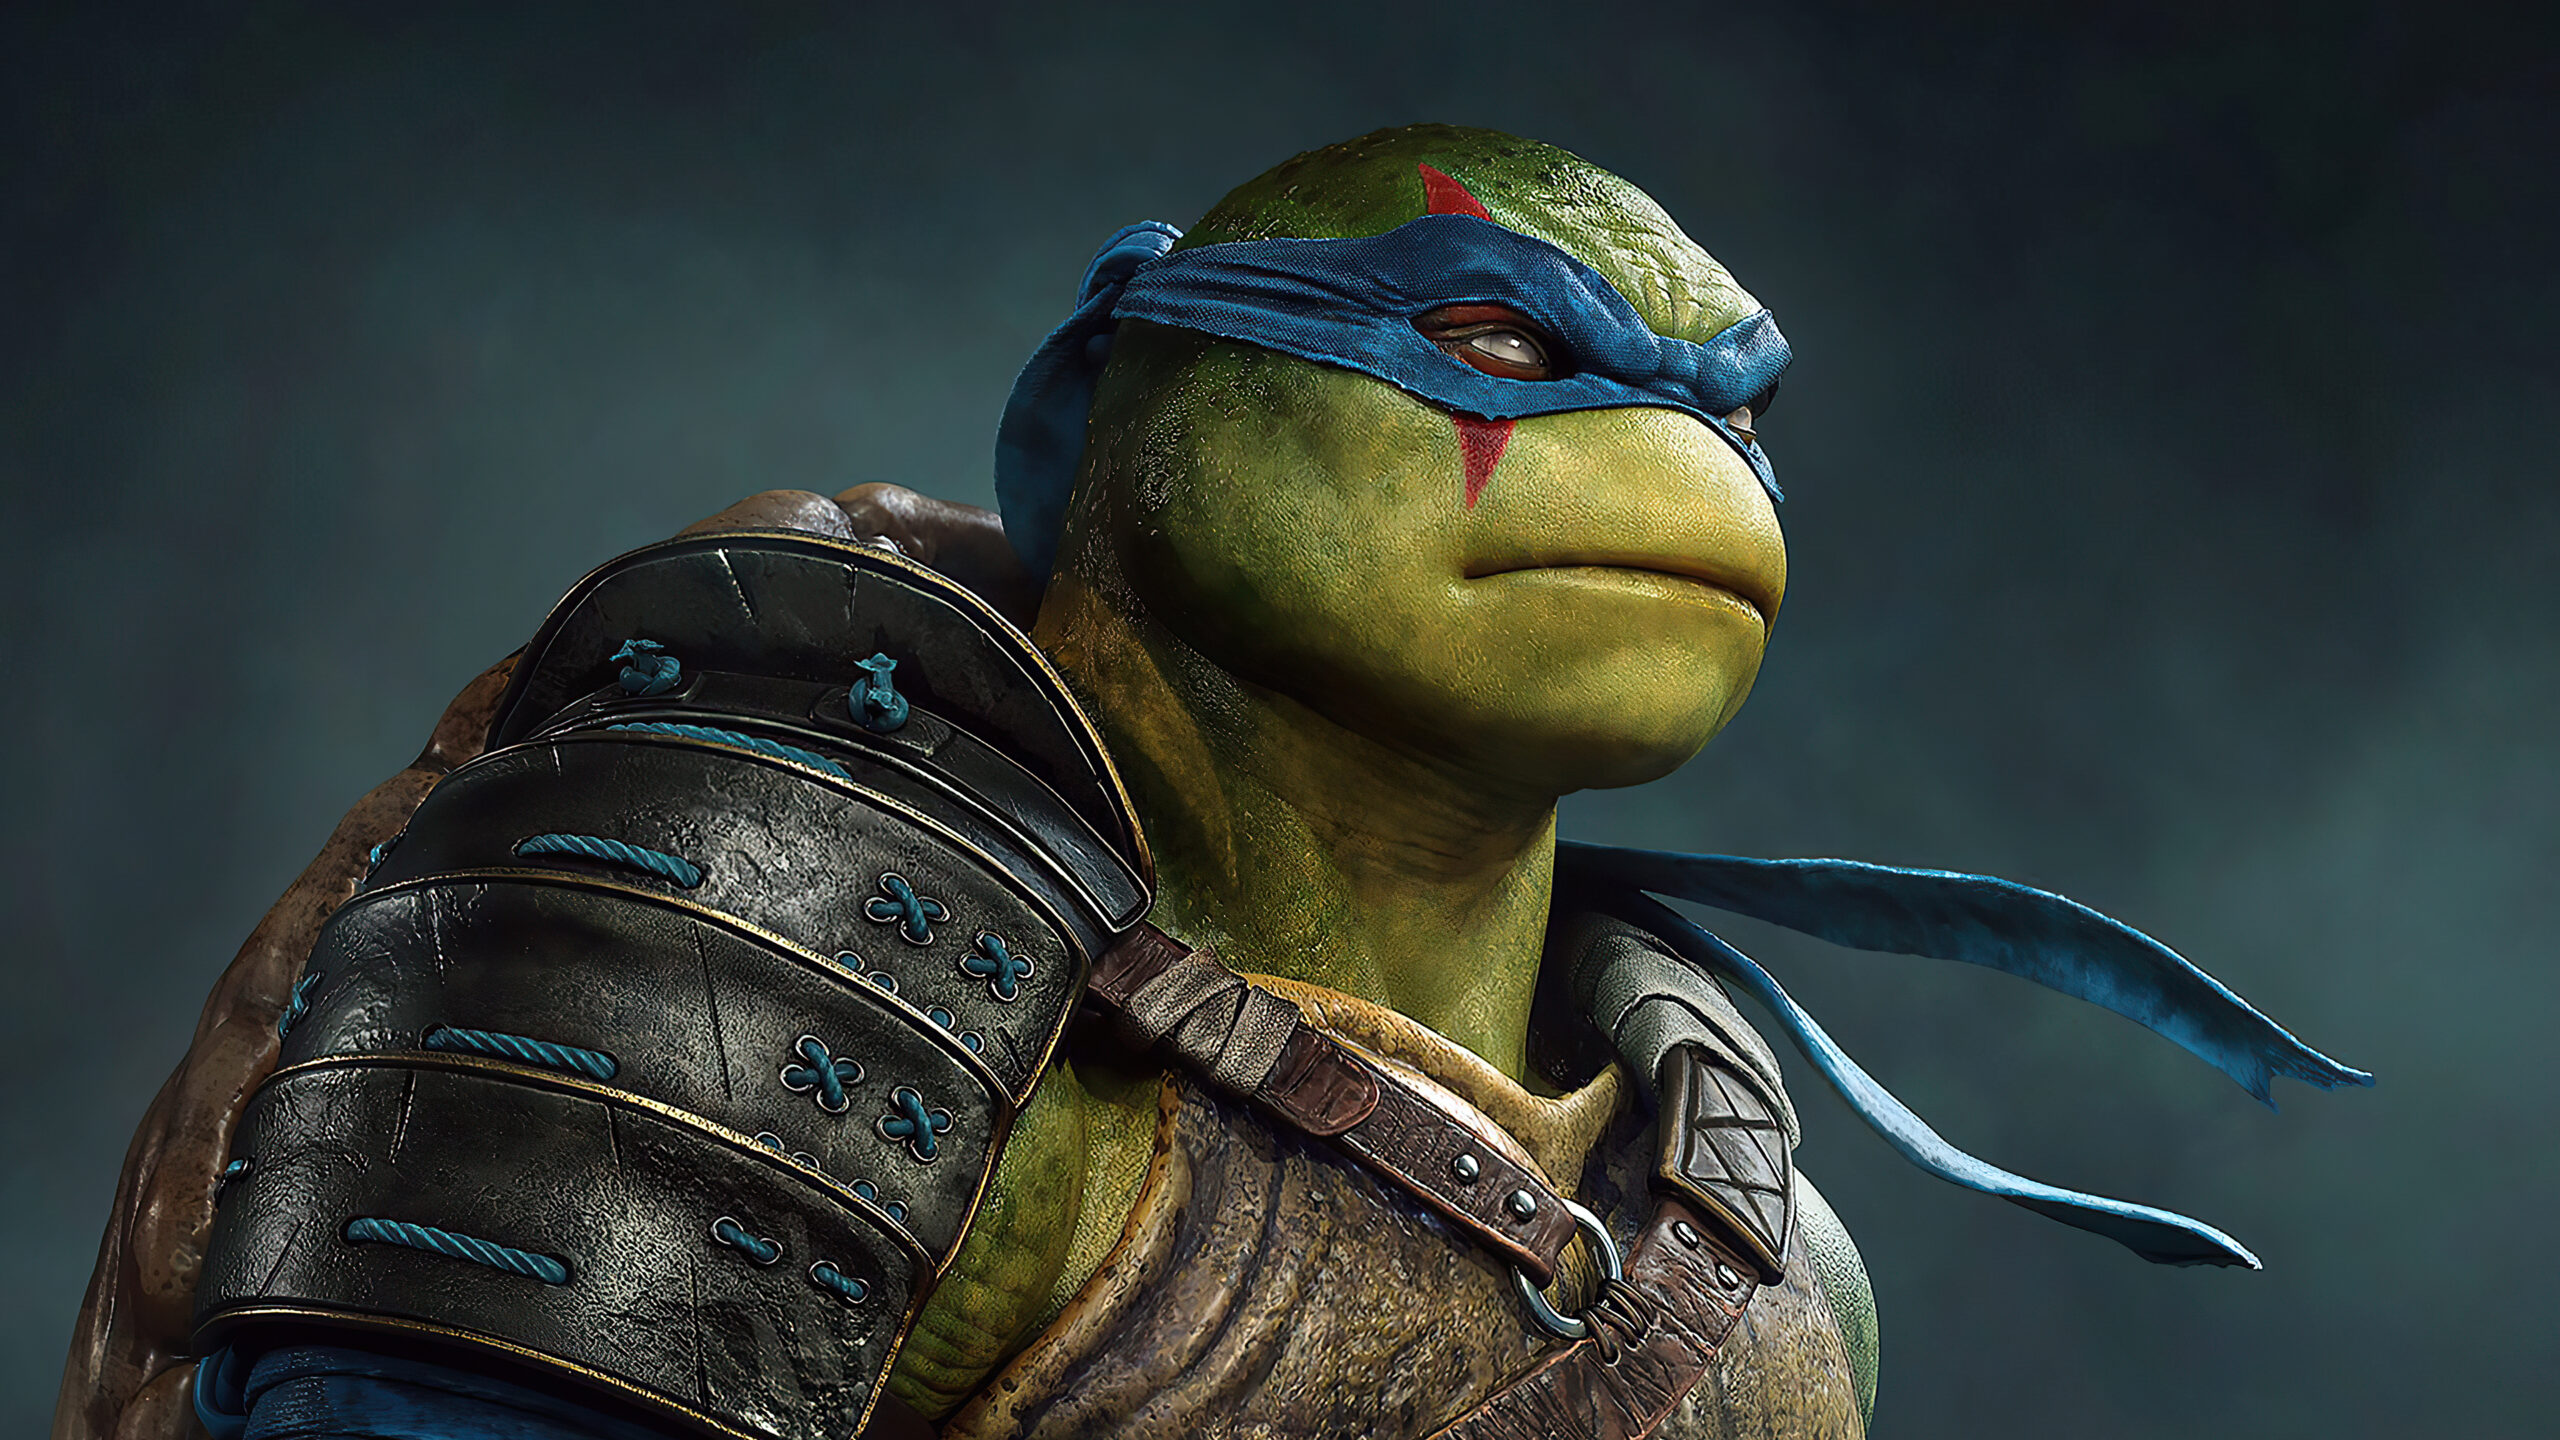 Leonardo- Ninja Turtle